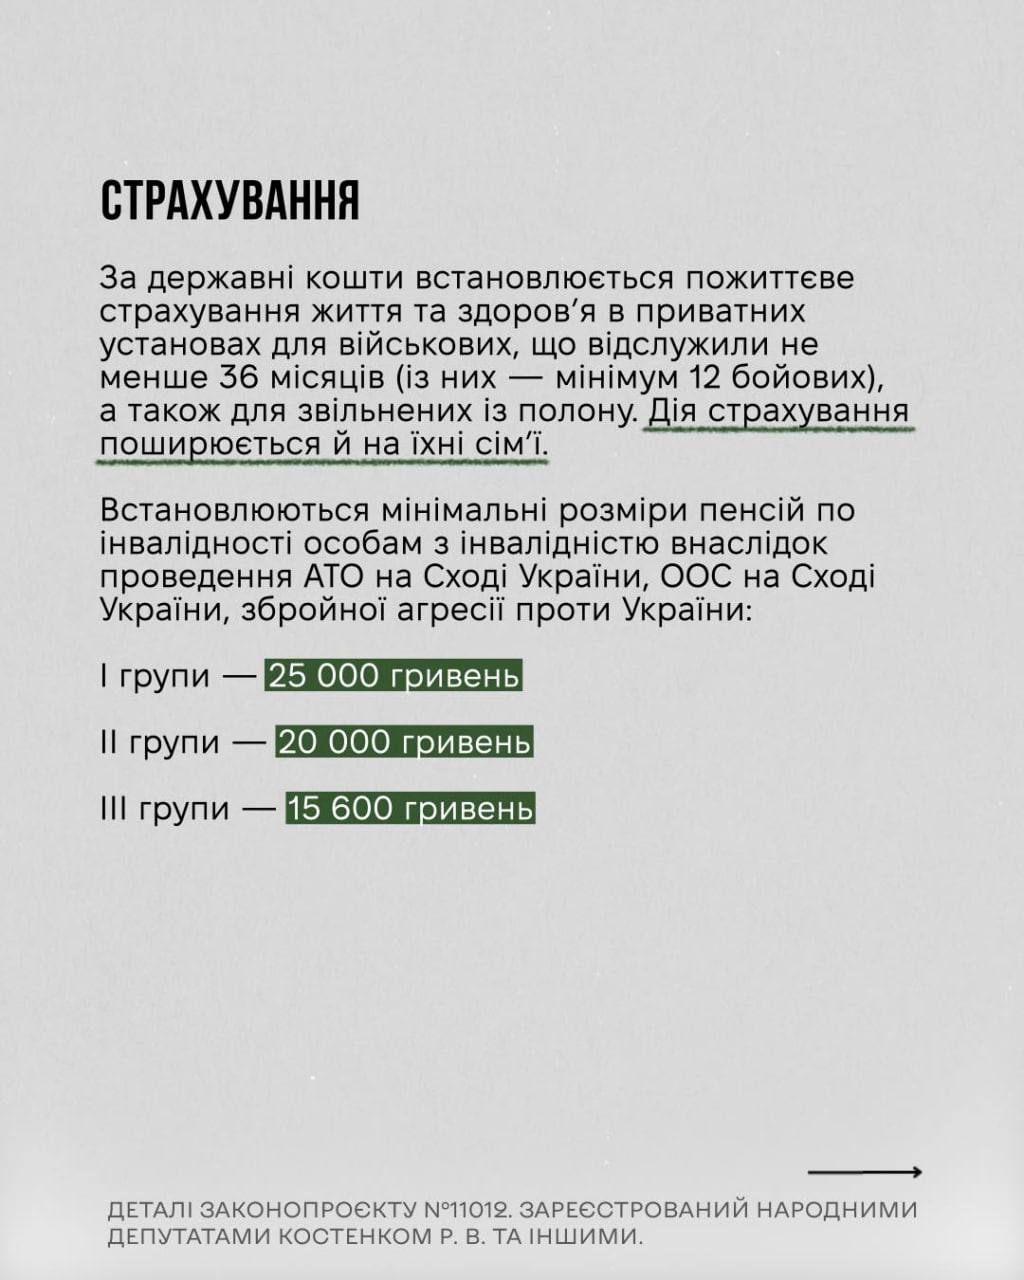 Снимок законопроекта на rada.gov.ua (с.7)